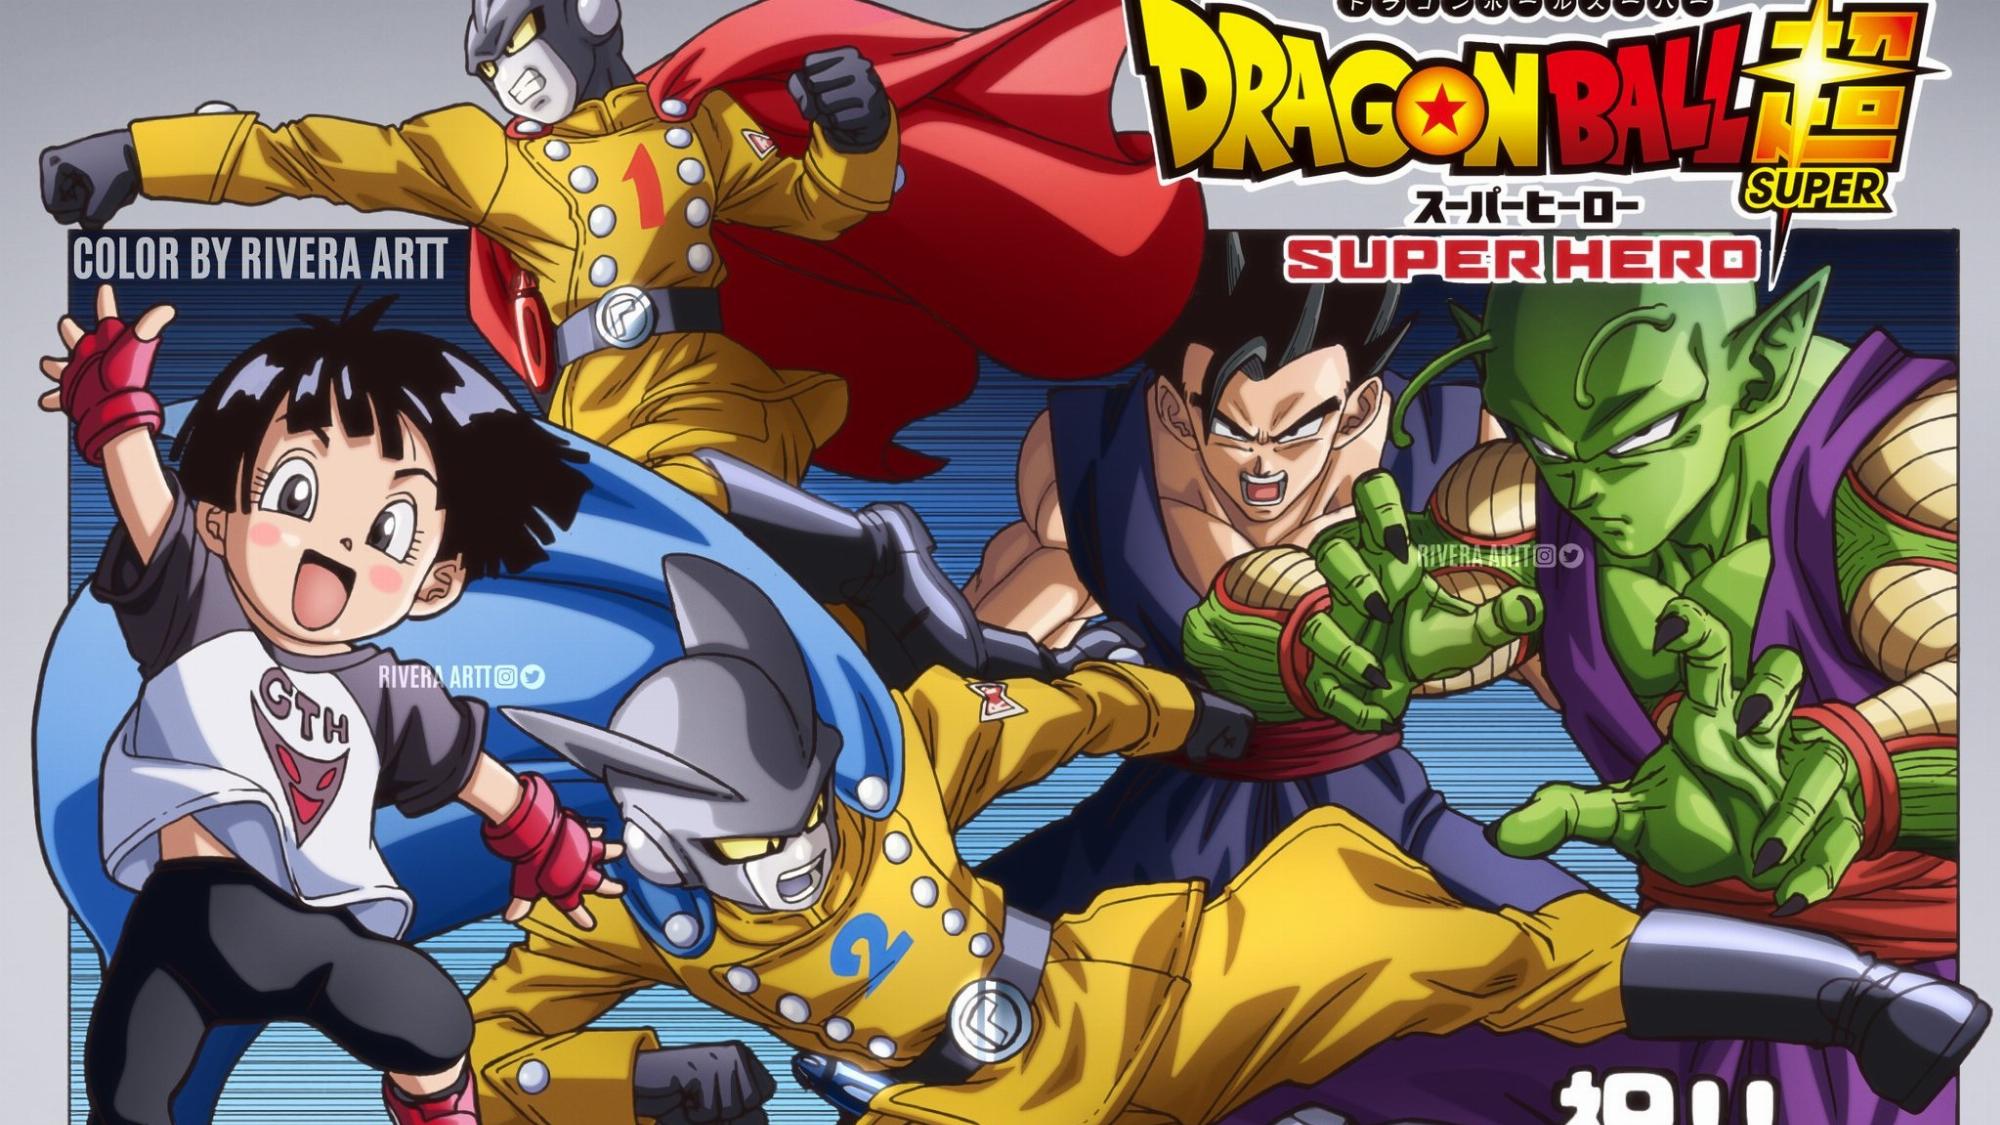 Thời điểm phát hành mới cho Dragon Ball Super: Super Hero được hé lộ